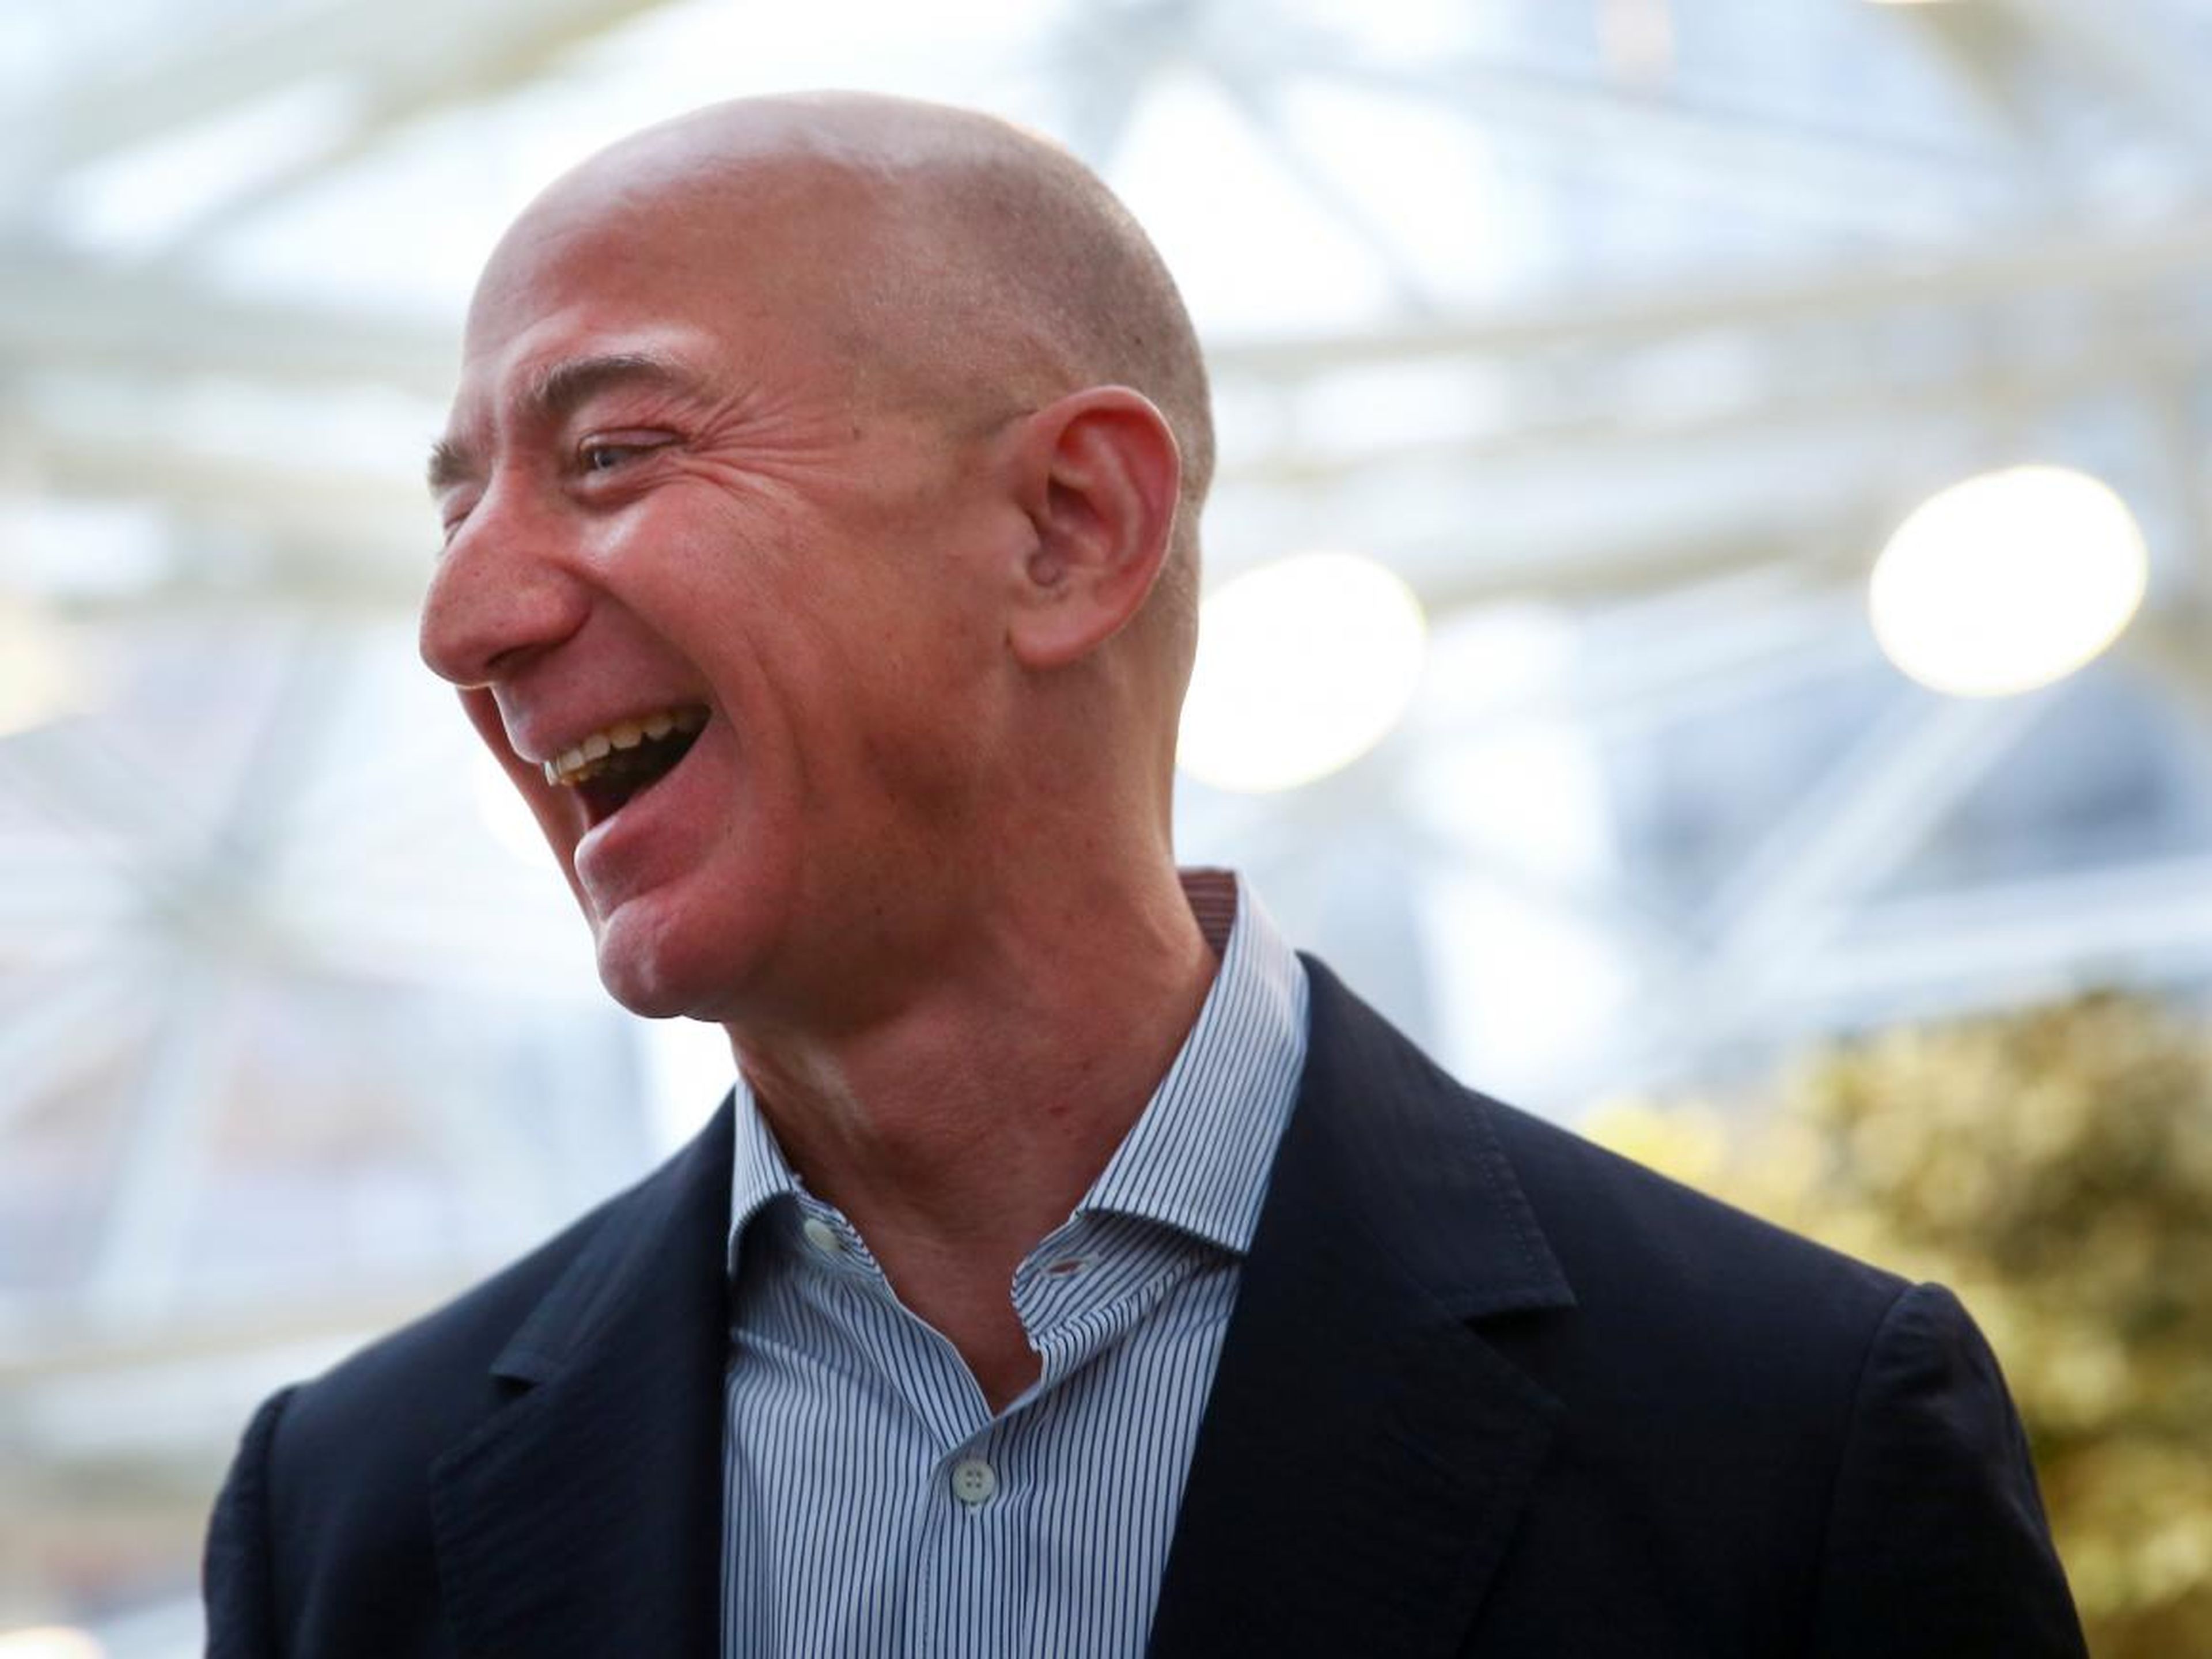 El CEO de Amazon, Jeff Bezos, gana más en un minuto de lo que gana el trabajador estadounidense promedio en un año.